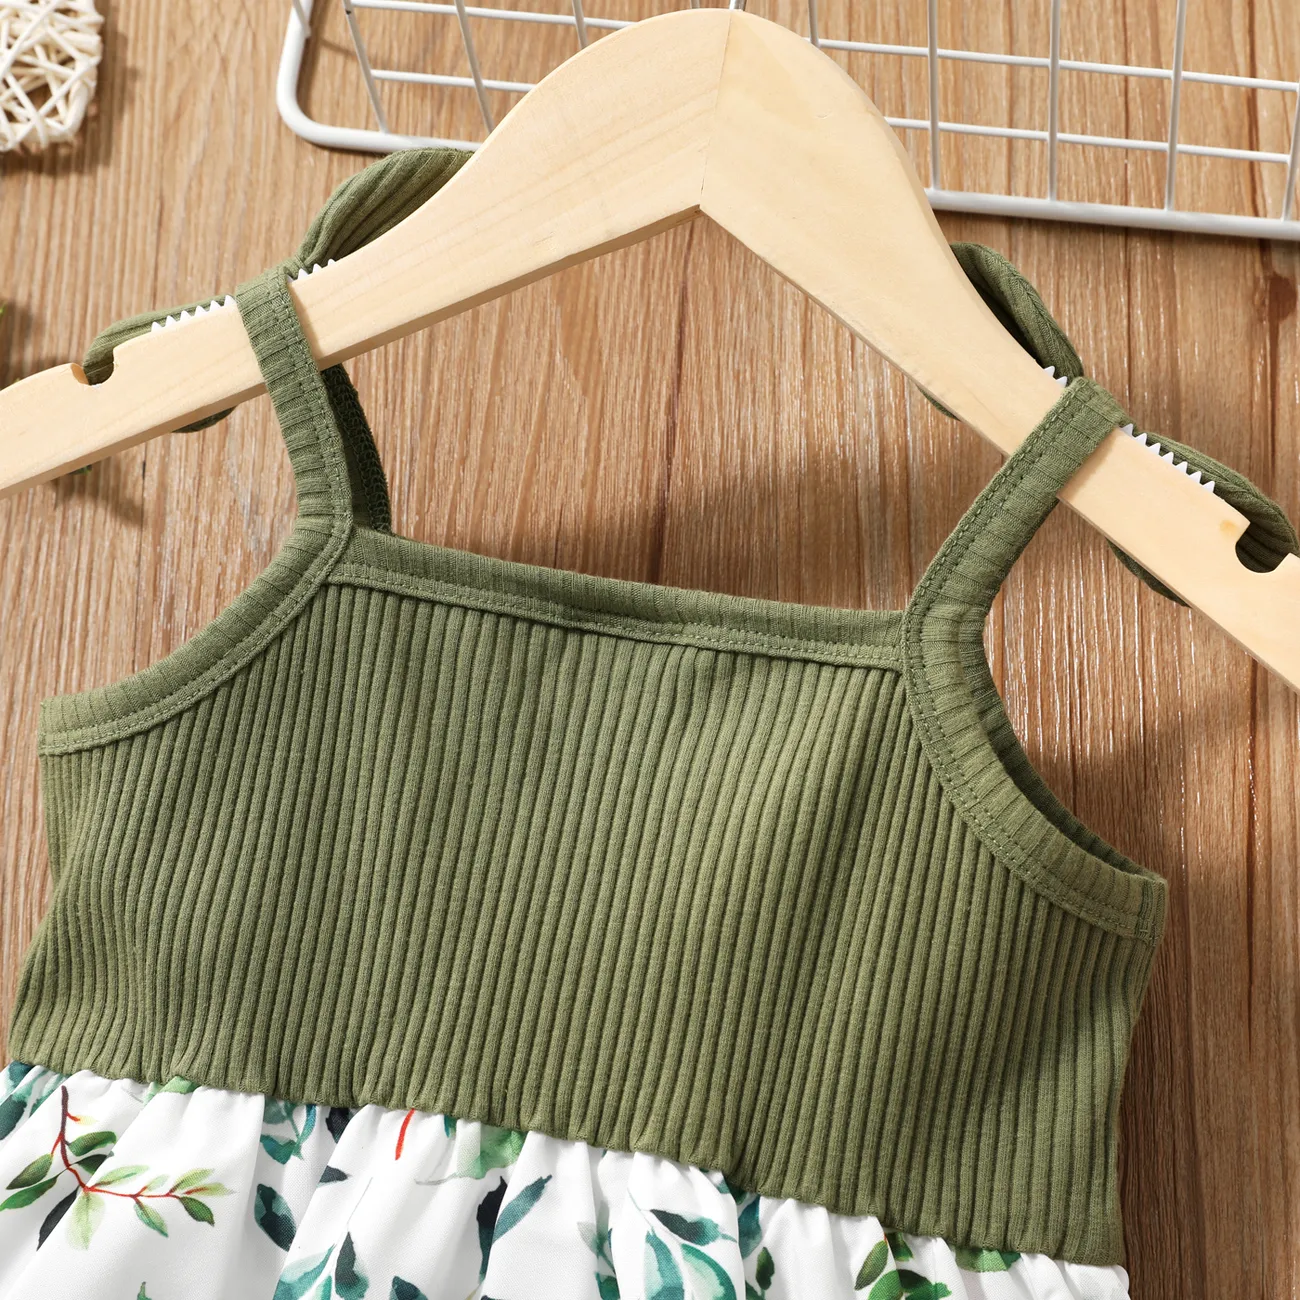 طفل فتاة فراشة / الأزهار طباعة bowknot تصميم لصق فستان كامي ربيع اخضر big image 1